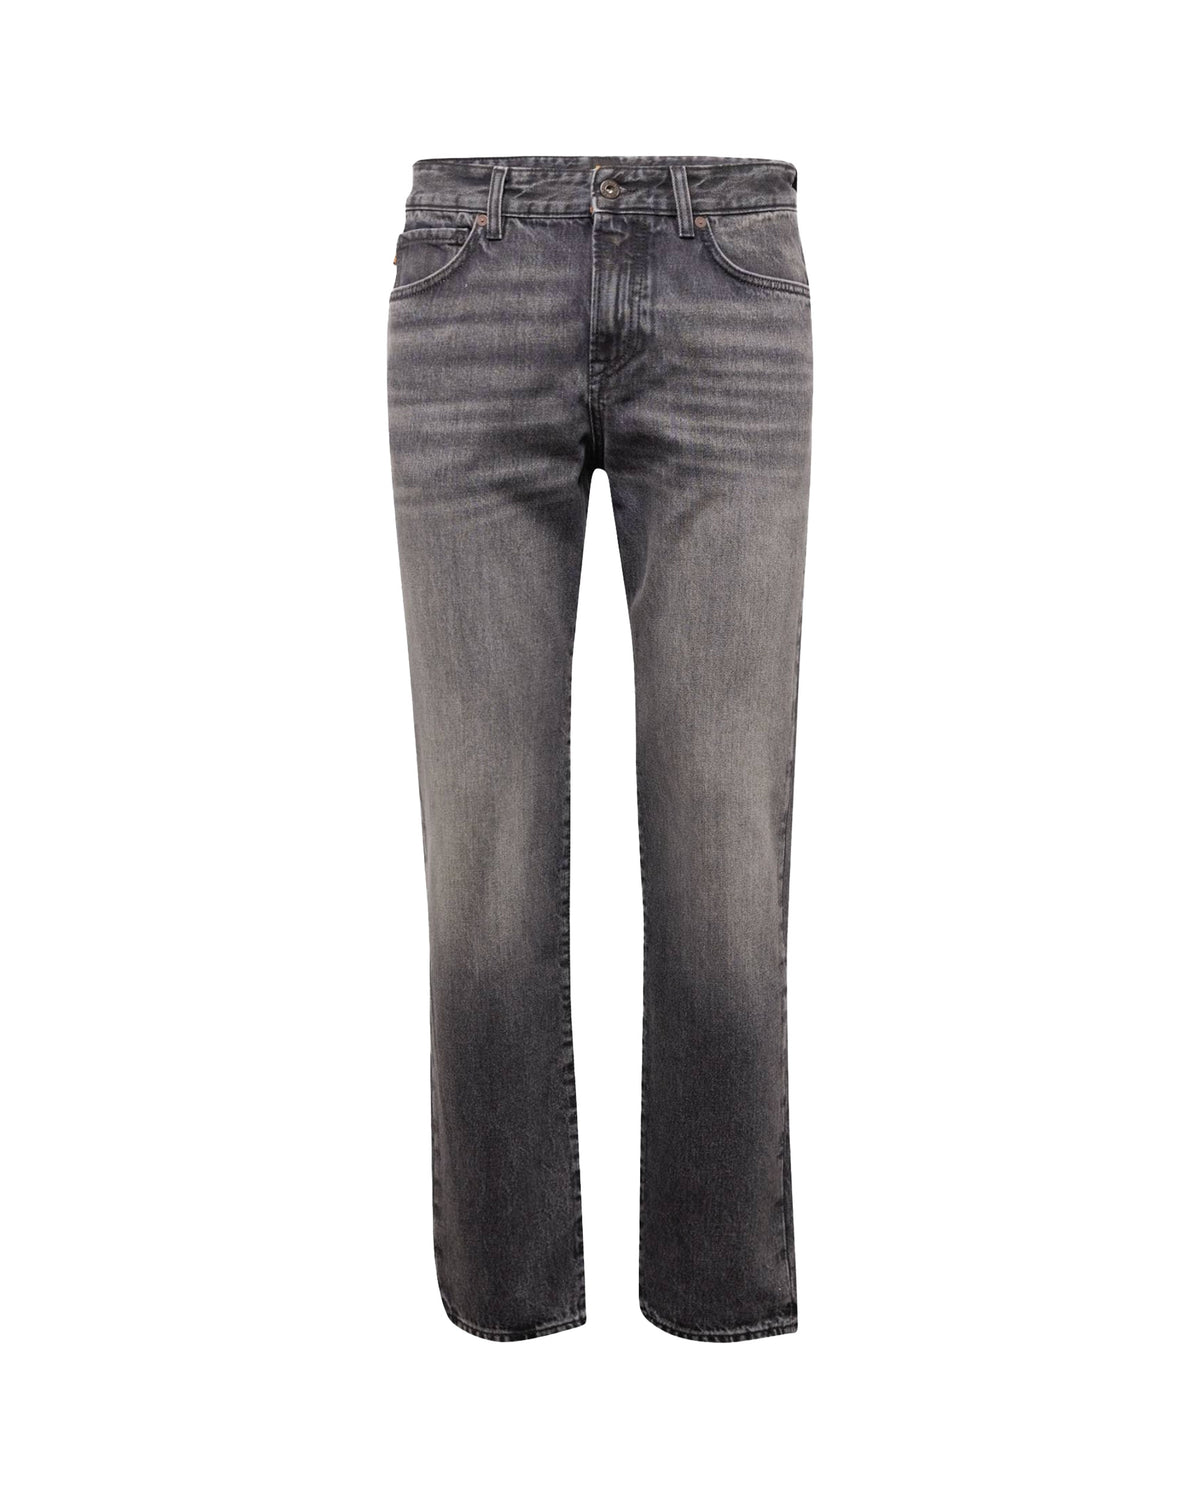 Pantalone Uomo Boss Jeans Re.Main Bc Charcoal